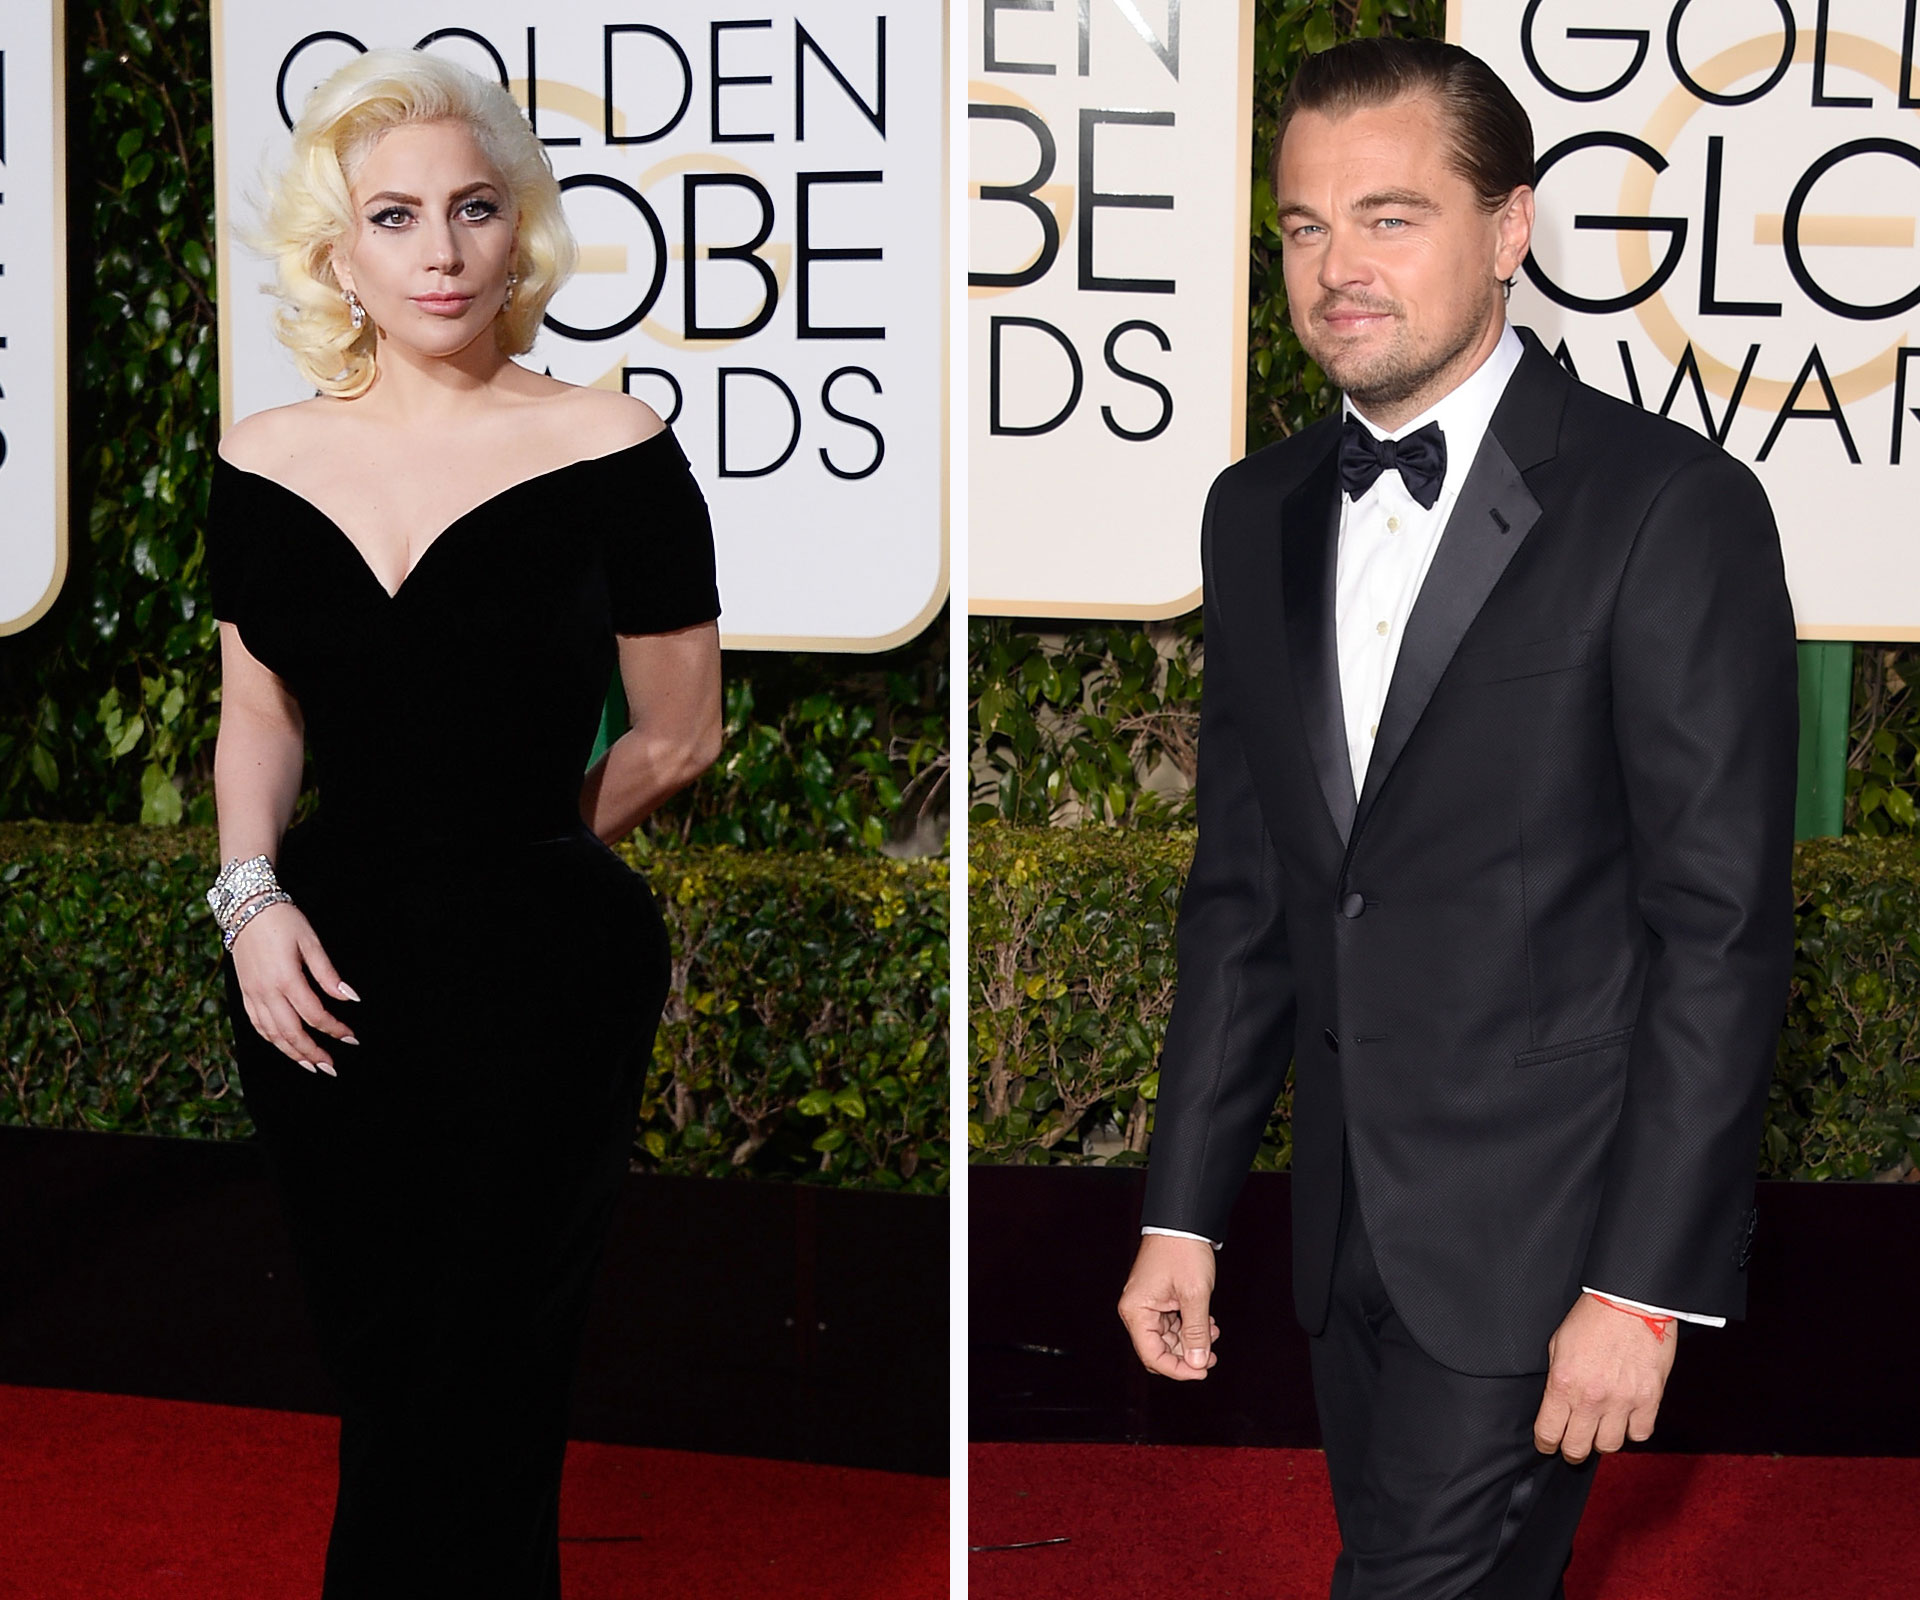 Leonardo DiCaprio and Lady Gaga